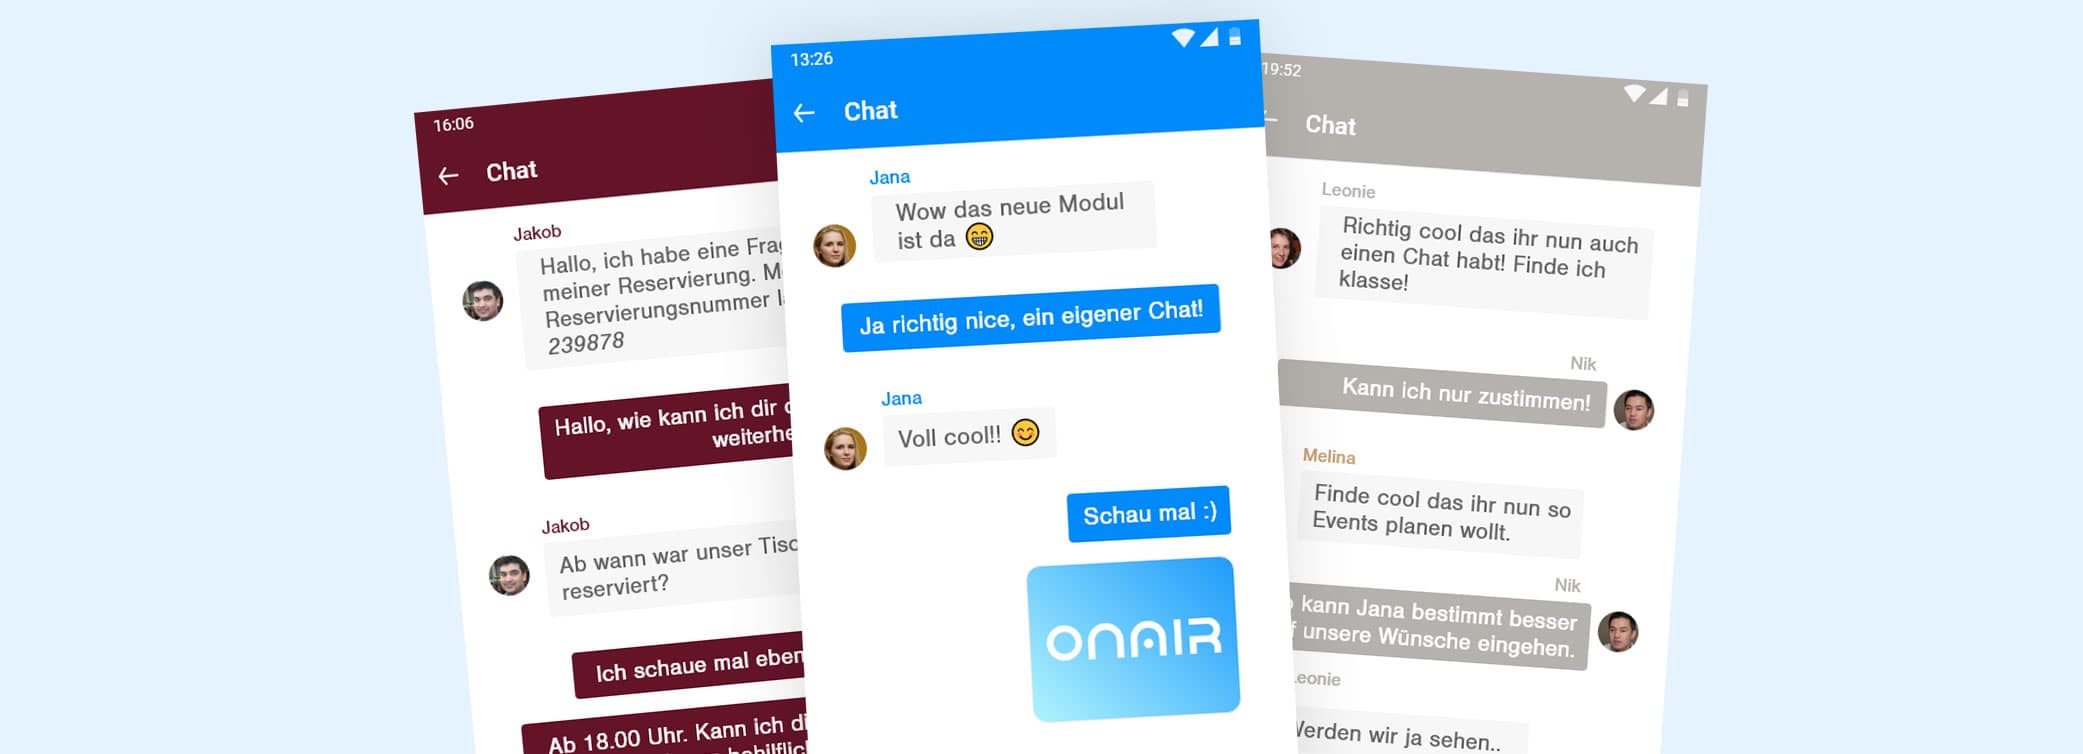 ON AIR Appbuilder - Neues Modul: Chat